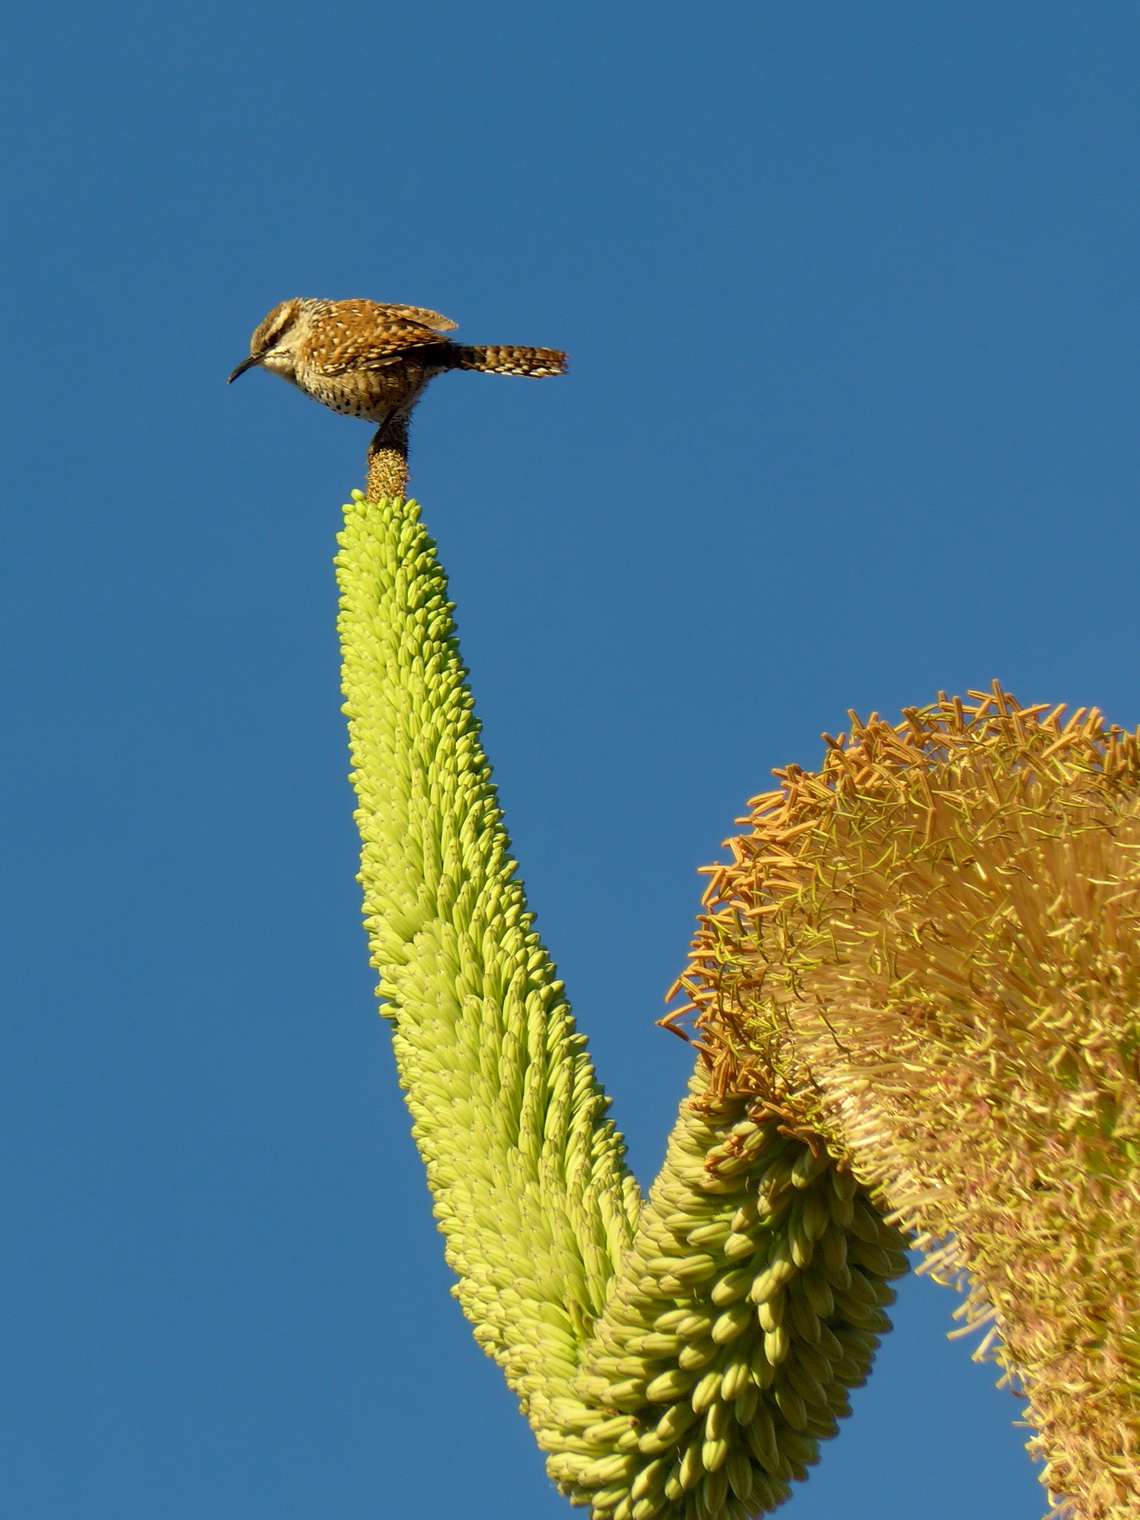 Little bird on a huge flower